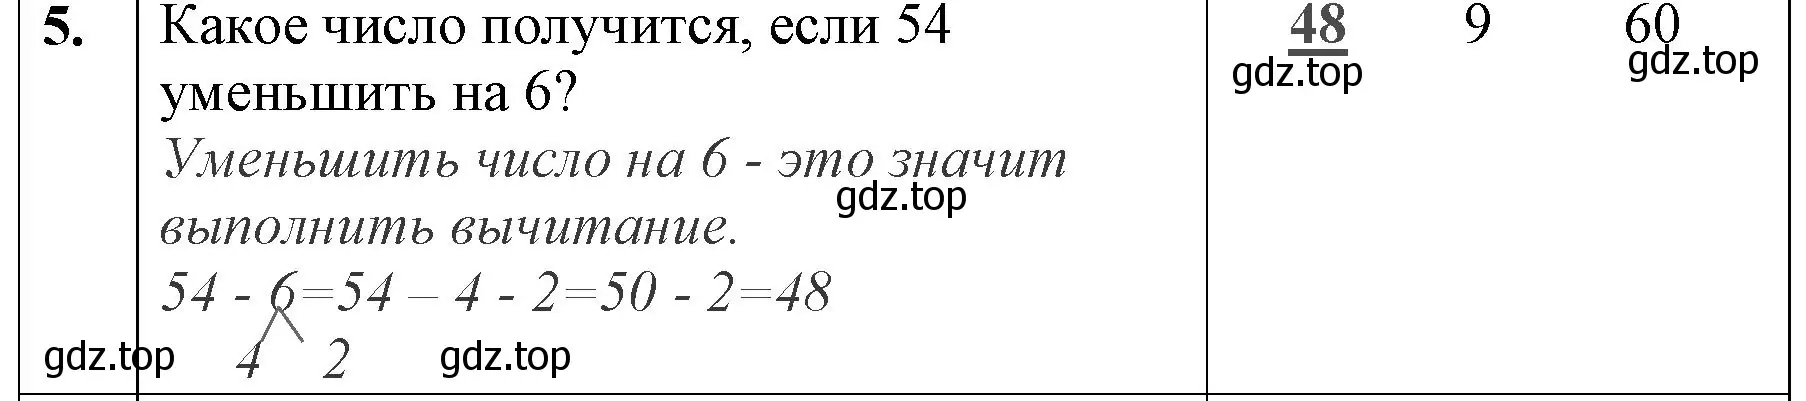 Решение номер 5 (страница 51) гдз по математике 3 класс Моро, Бантова, учебник 1 часть